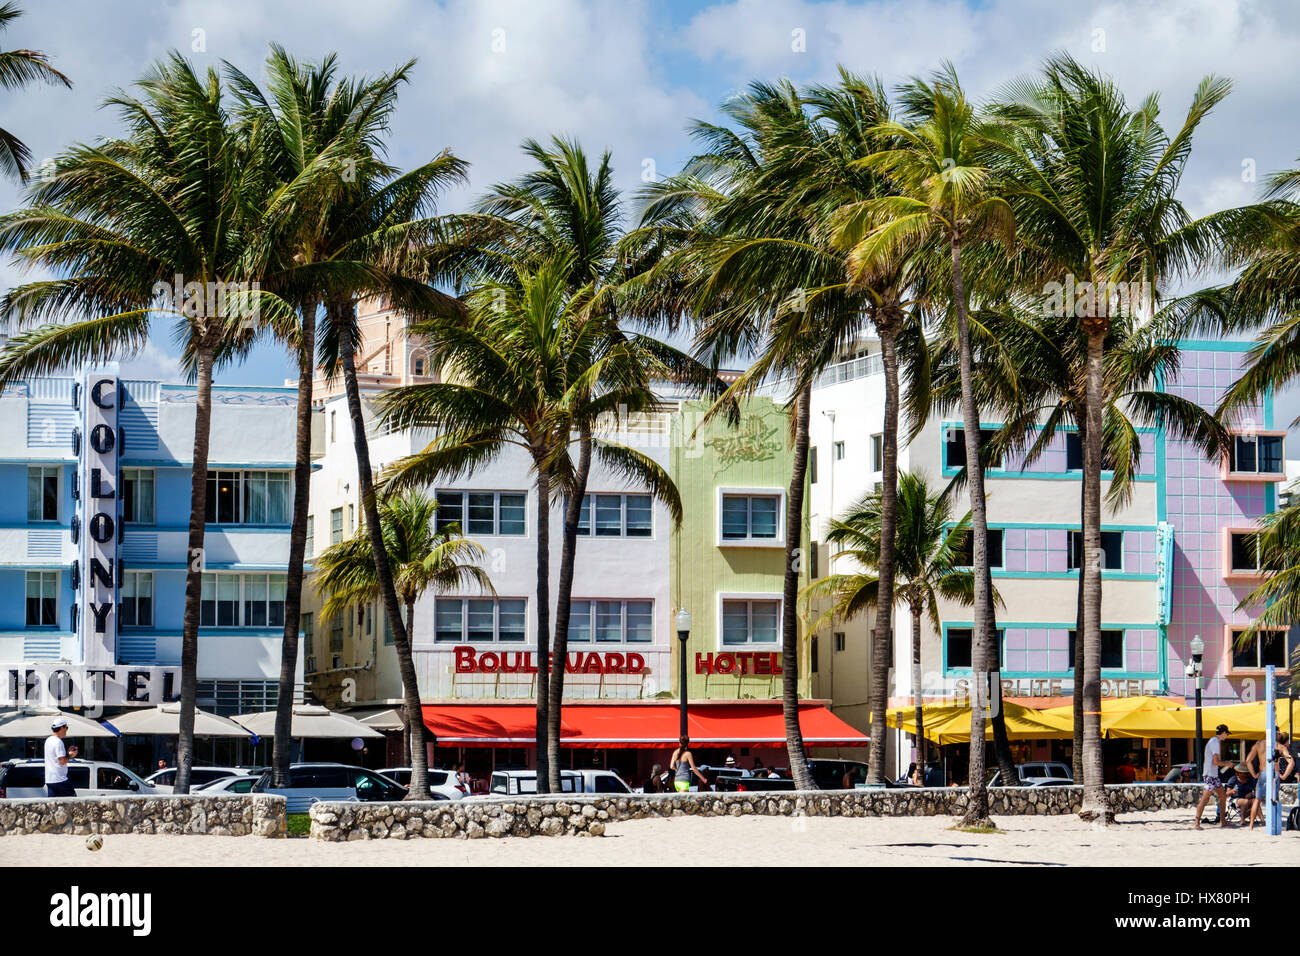 Miami Beach, Florida, Ocean Drive, historisches Art déco-Viertel, Lummus Park, Palmen, Colony Hotel, Boulevard Hotel, Starlite, Hotel, FL170221014 Stockfoto